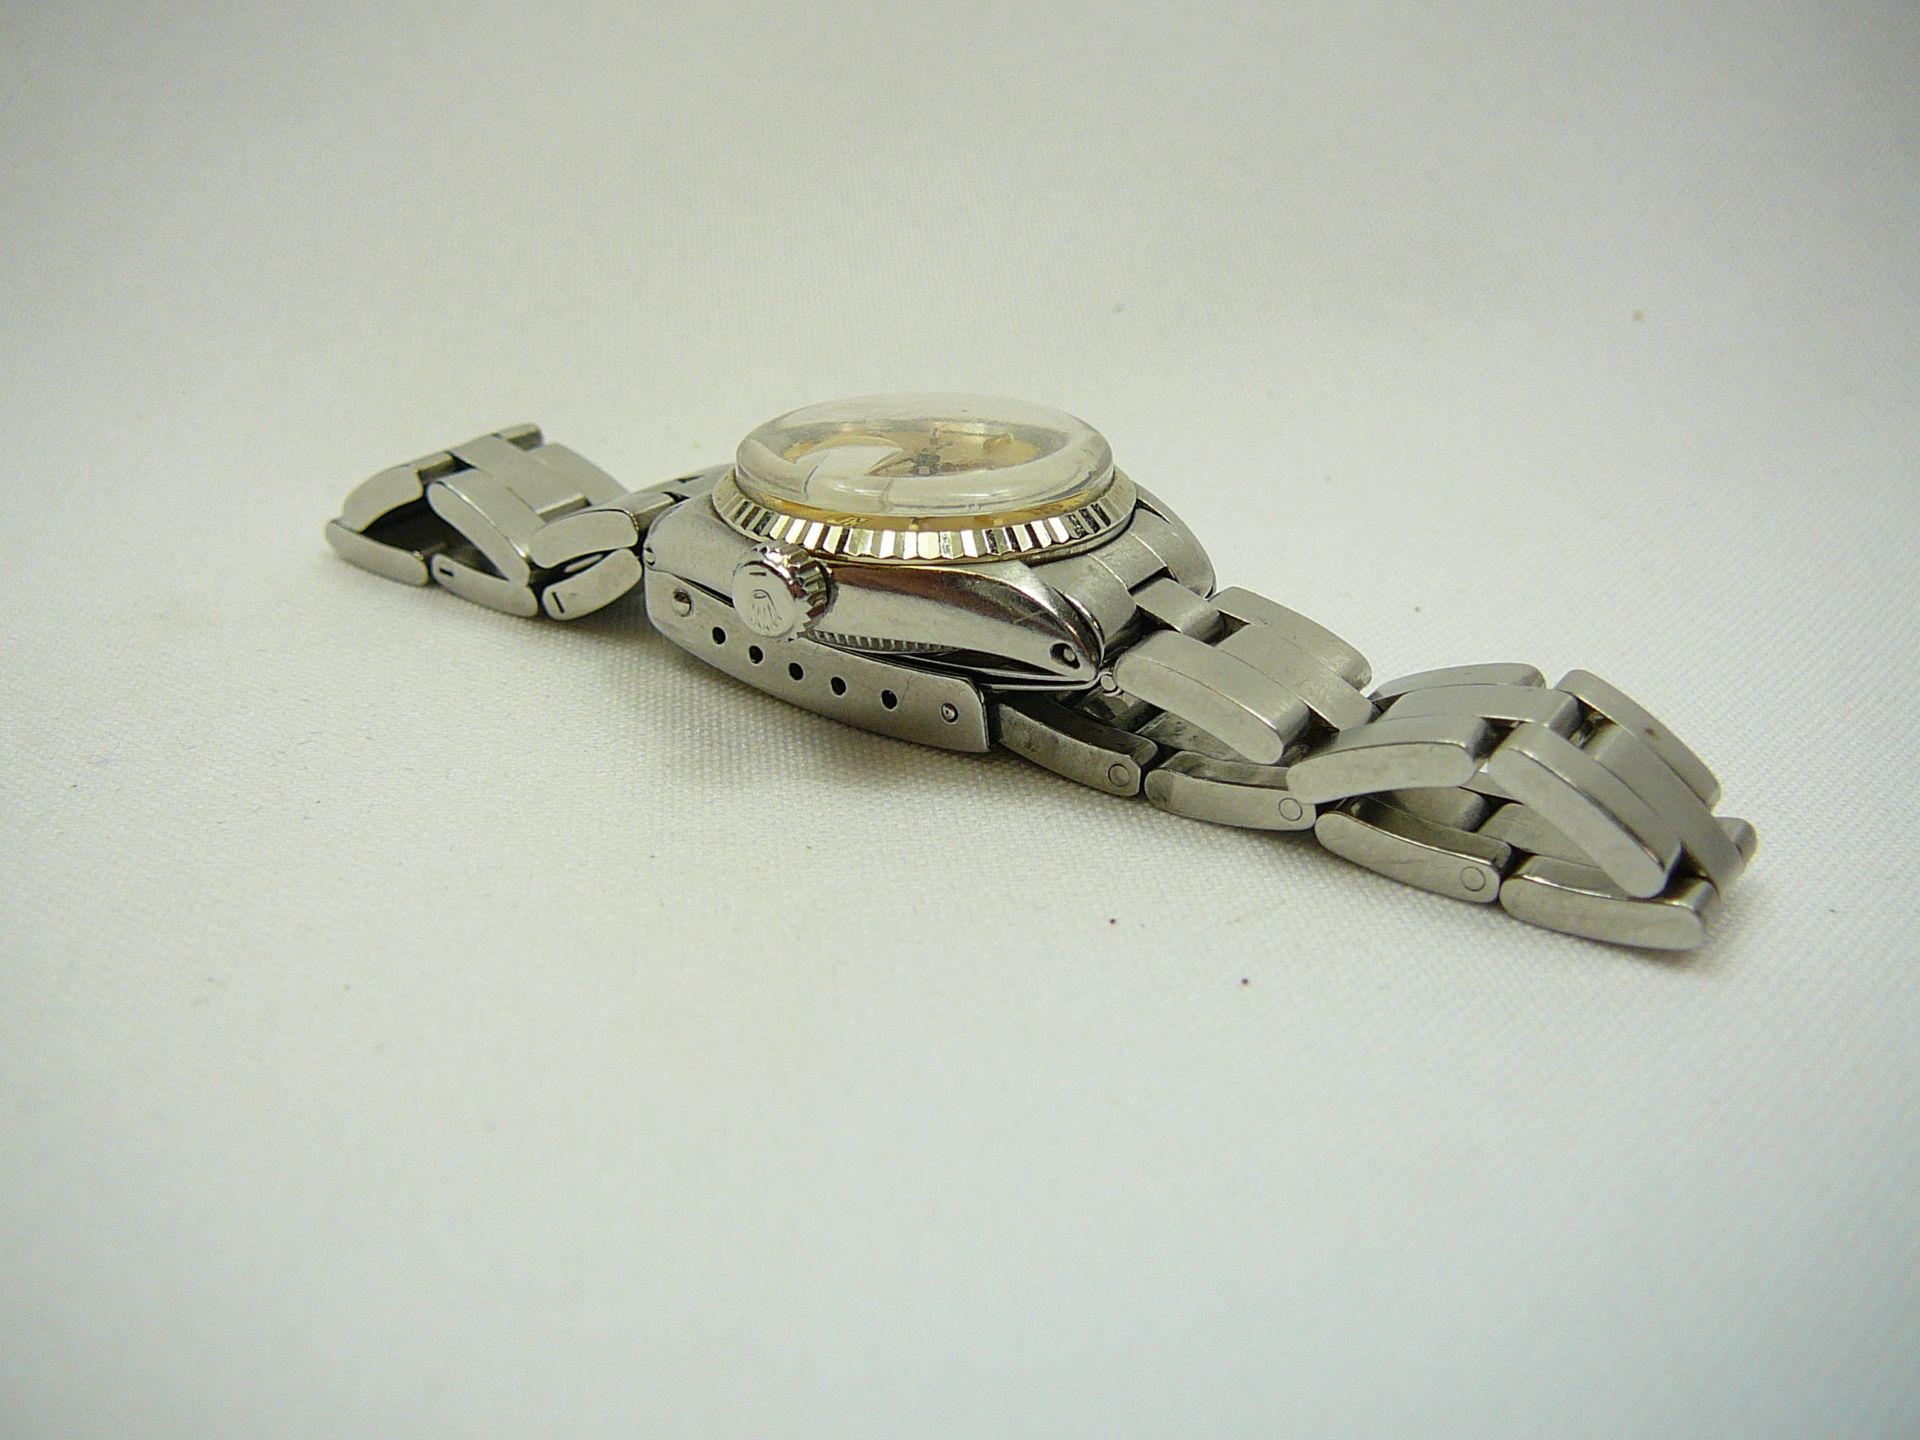 Ladies Vintage Rolex Wrist Watch - Image 4 of 7